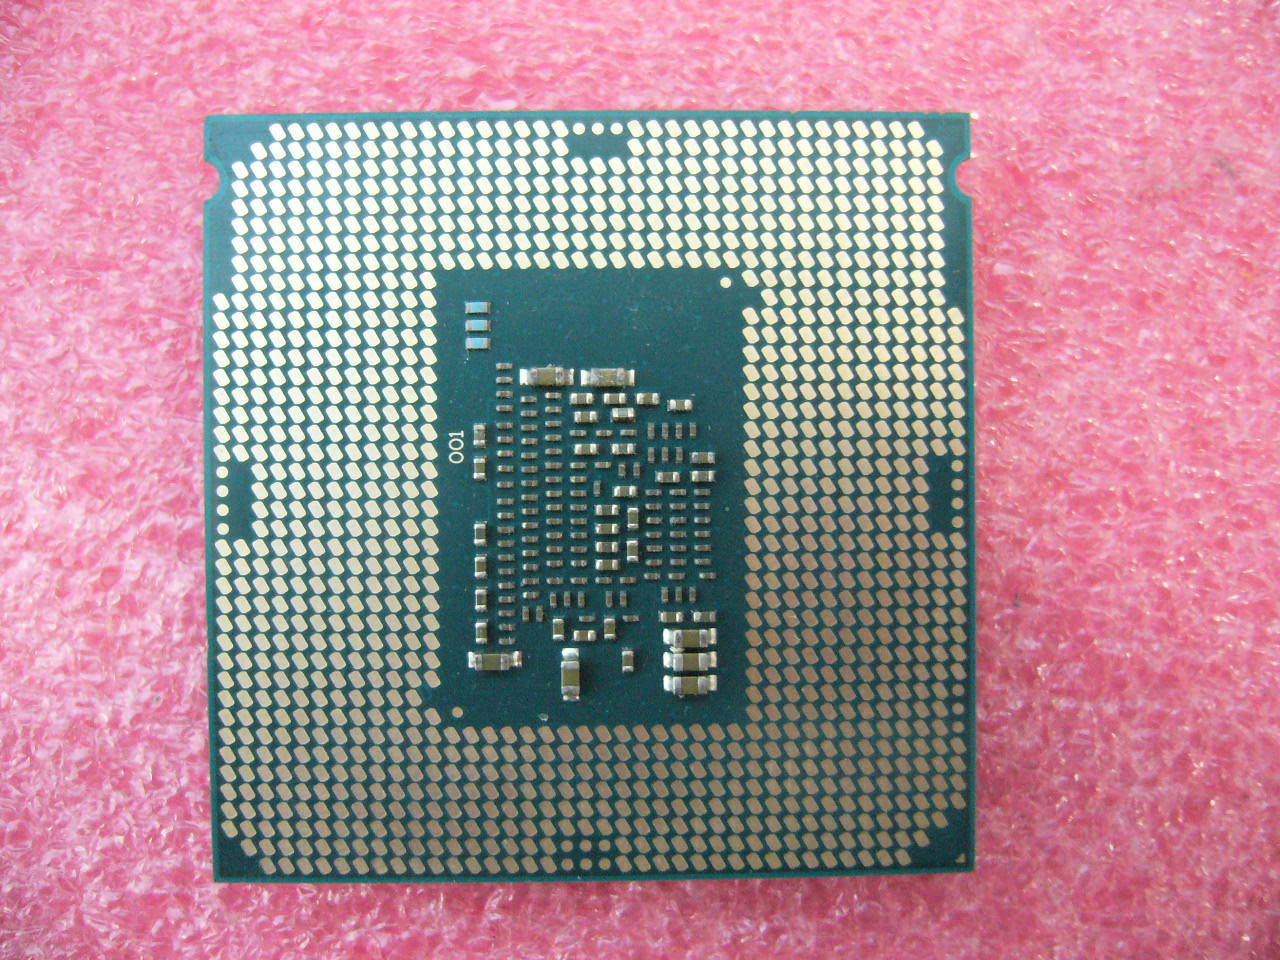 QTY 1x Intel CPU i3-6100 Dual-Cores 3.70Ghz 3MB LGA1151 SR2HG NOT WORKING - zum Schließen ins Bild klicken